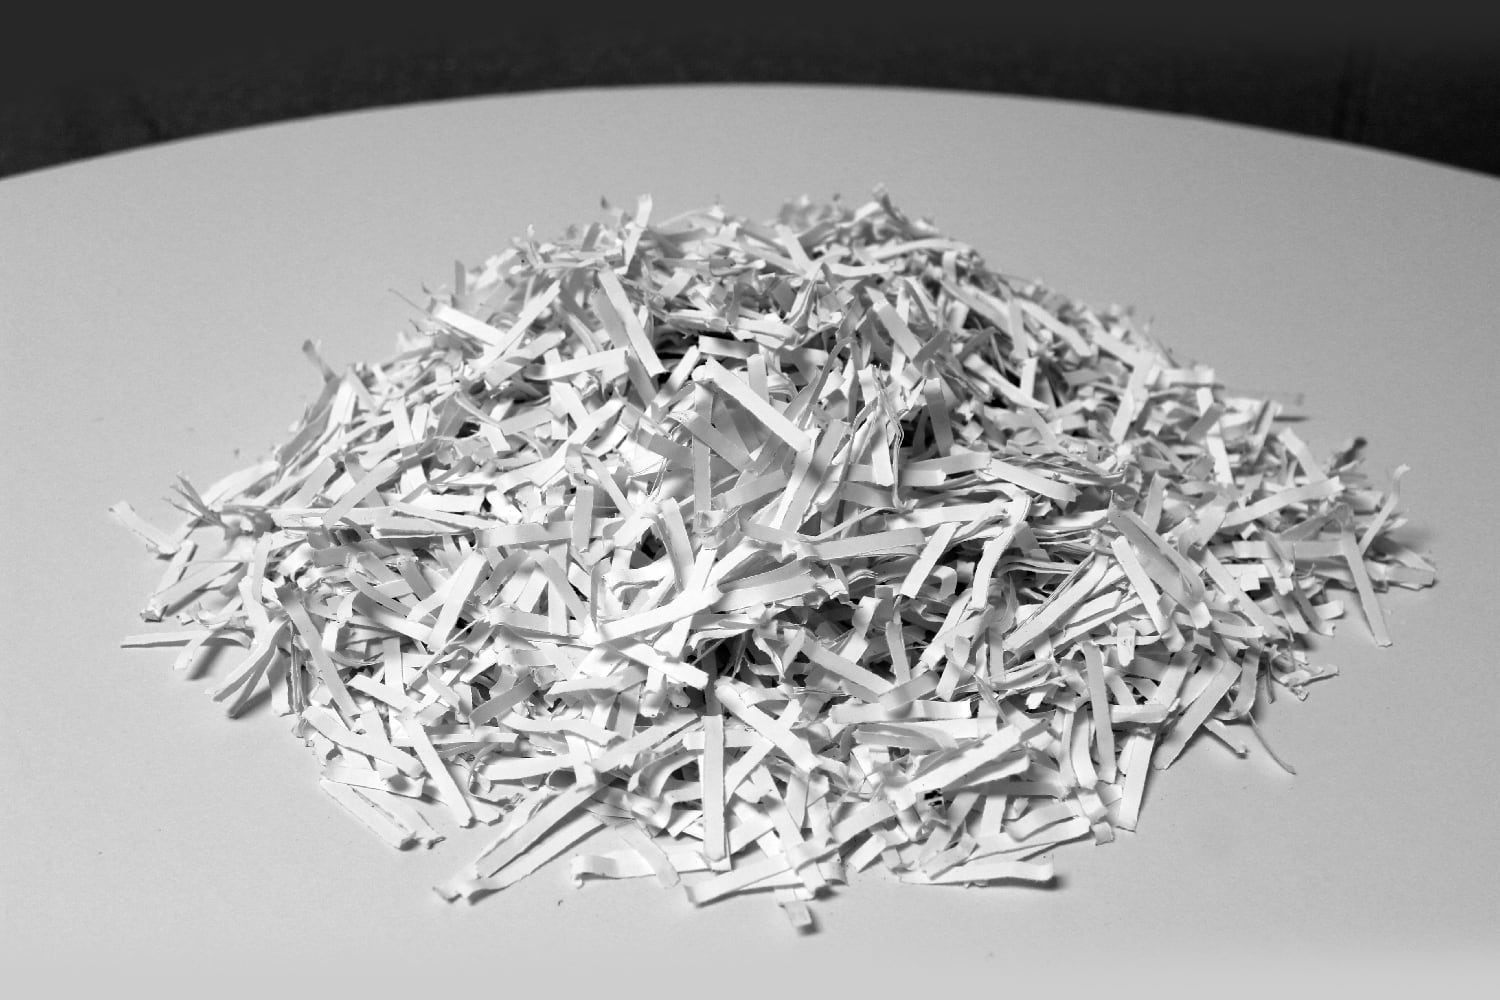 13 Uses for Shredded Paper